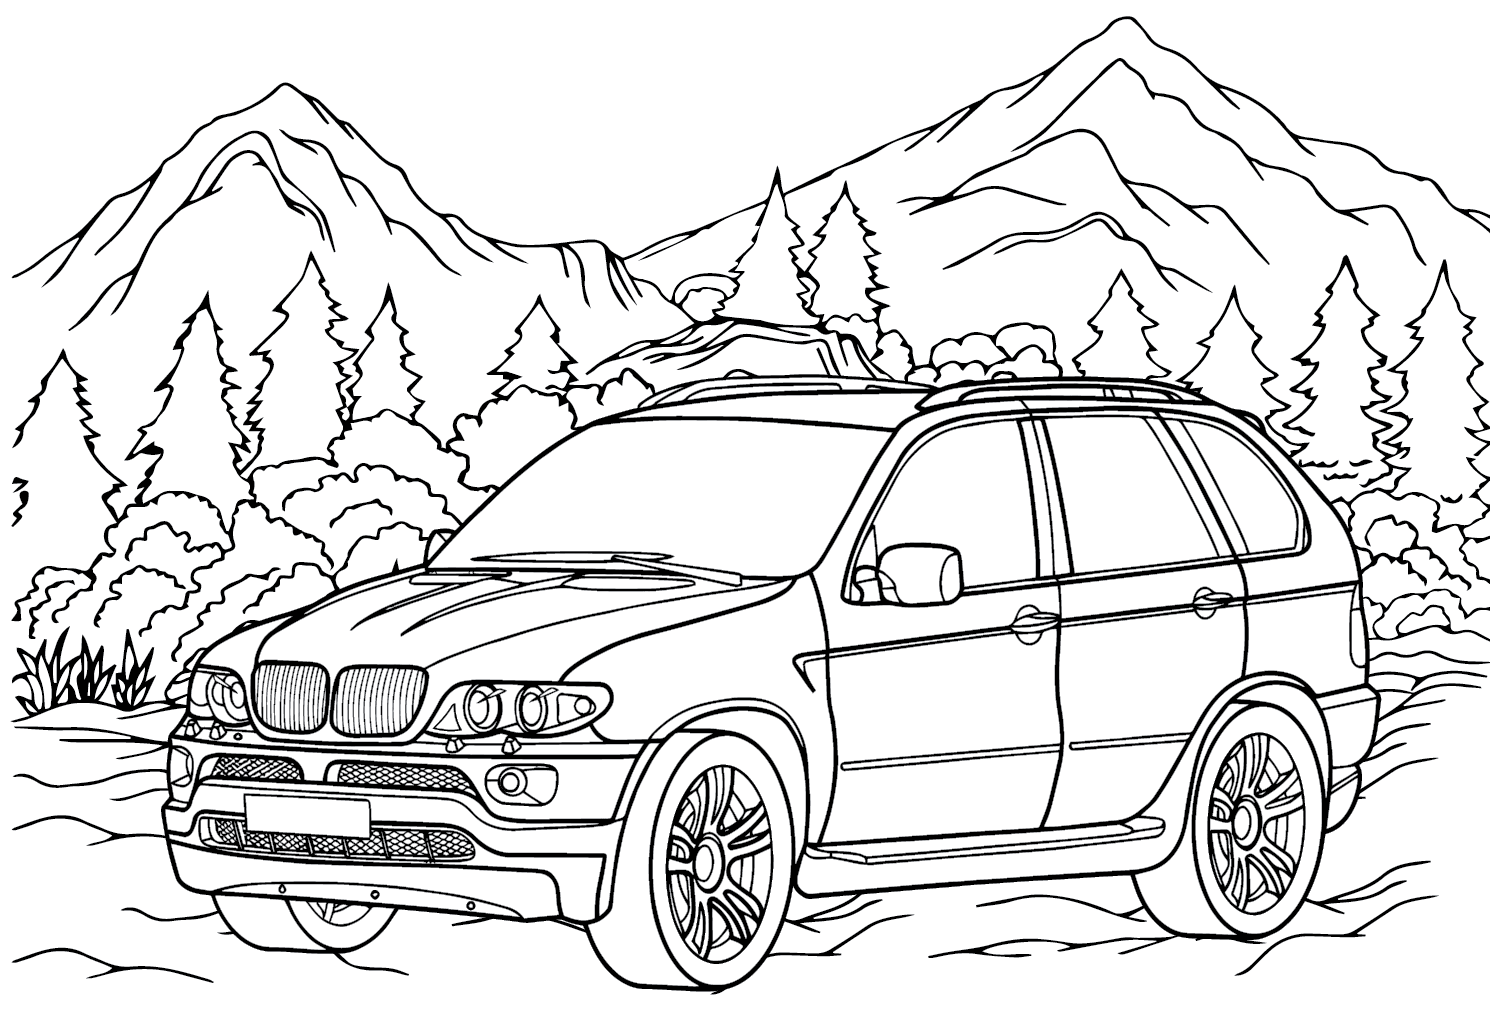 Página para colorir do BMW X5 da BMW